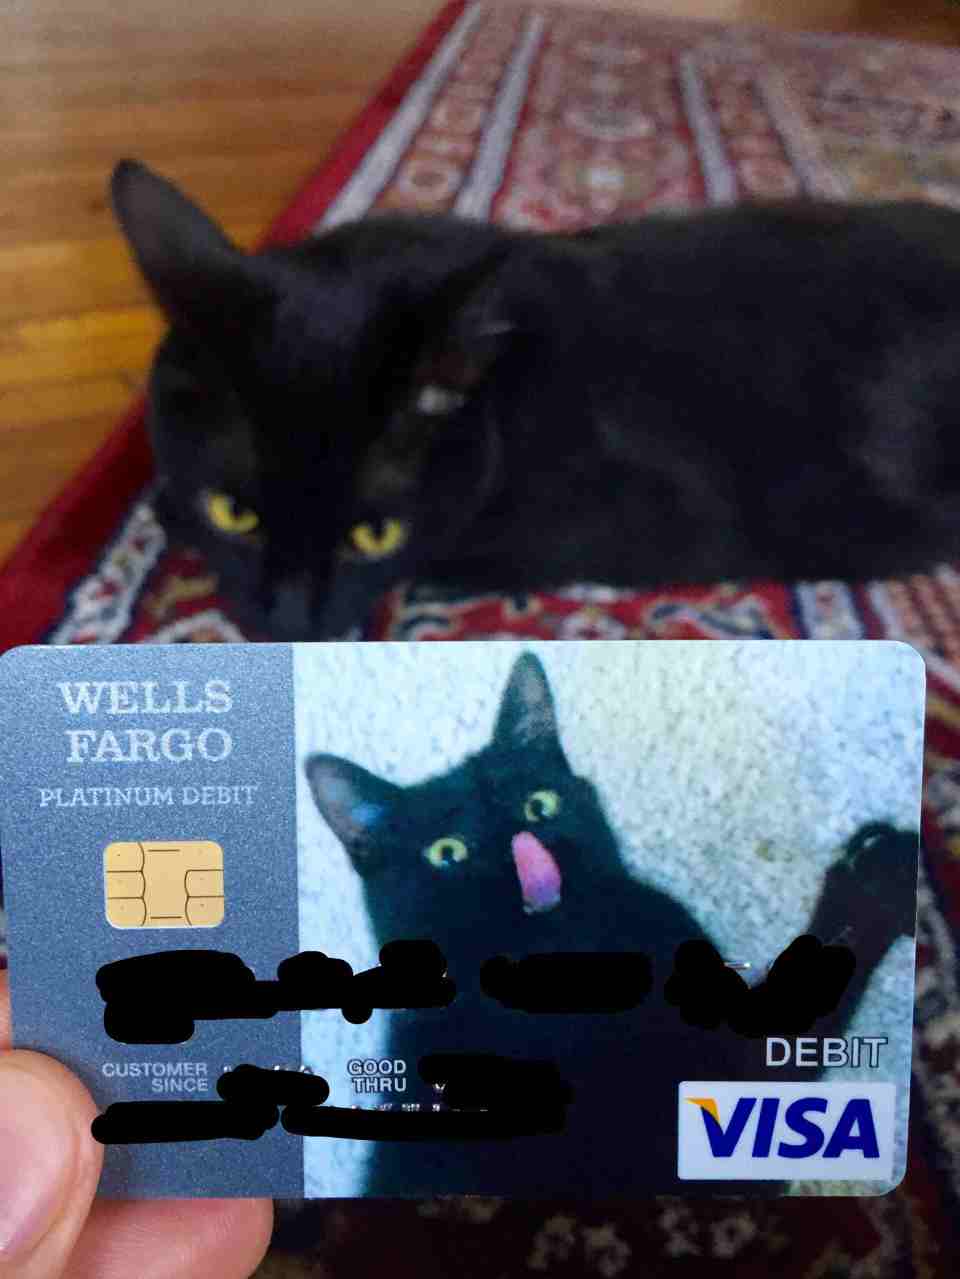 funny debit card - Wells Fargo Platinum Debit Debit Customer Since Good Thru Visa